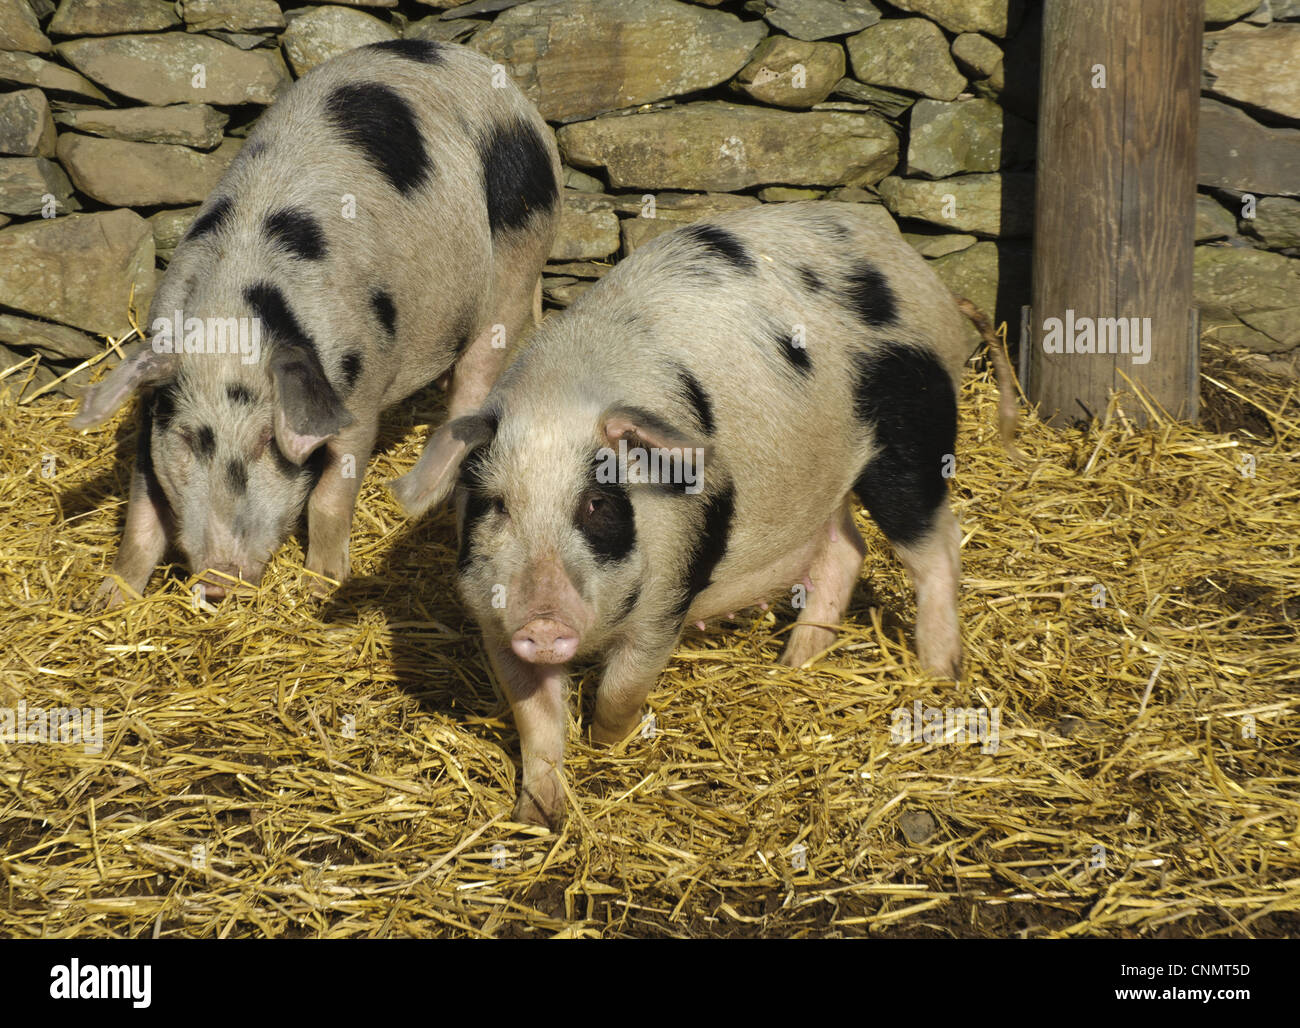 Inländische Schweine Gloucester alten tüpfeln Sauen kleinere selektiv gezüchtet sät Teil Mikro Schweinezucht Prozess Cumbria England november Stockfoto